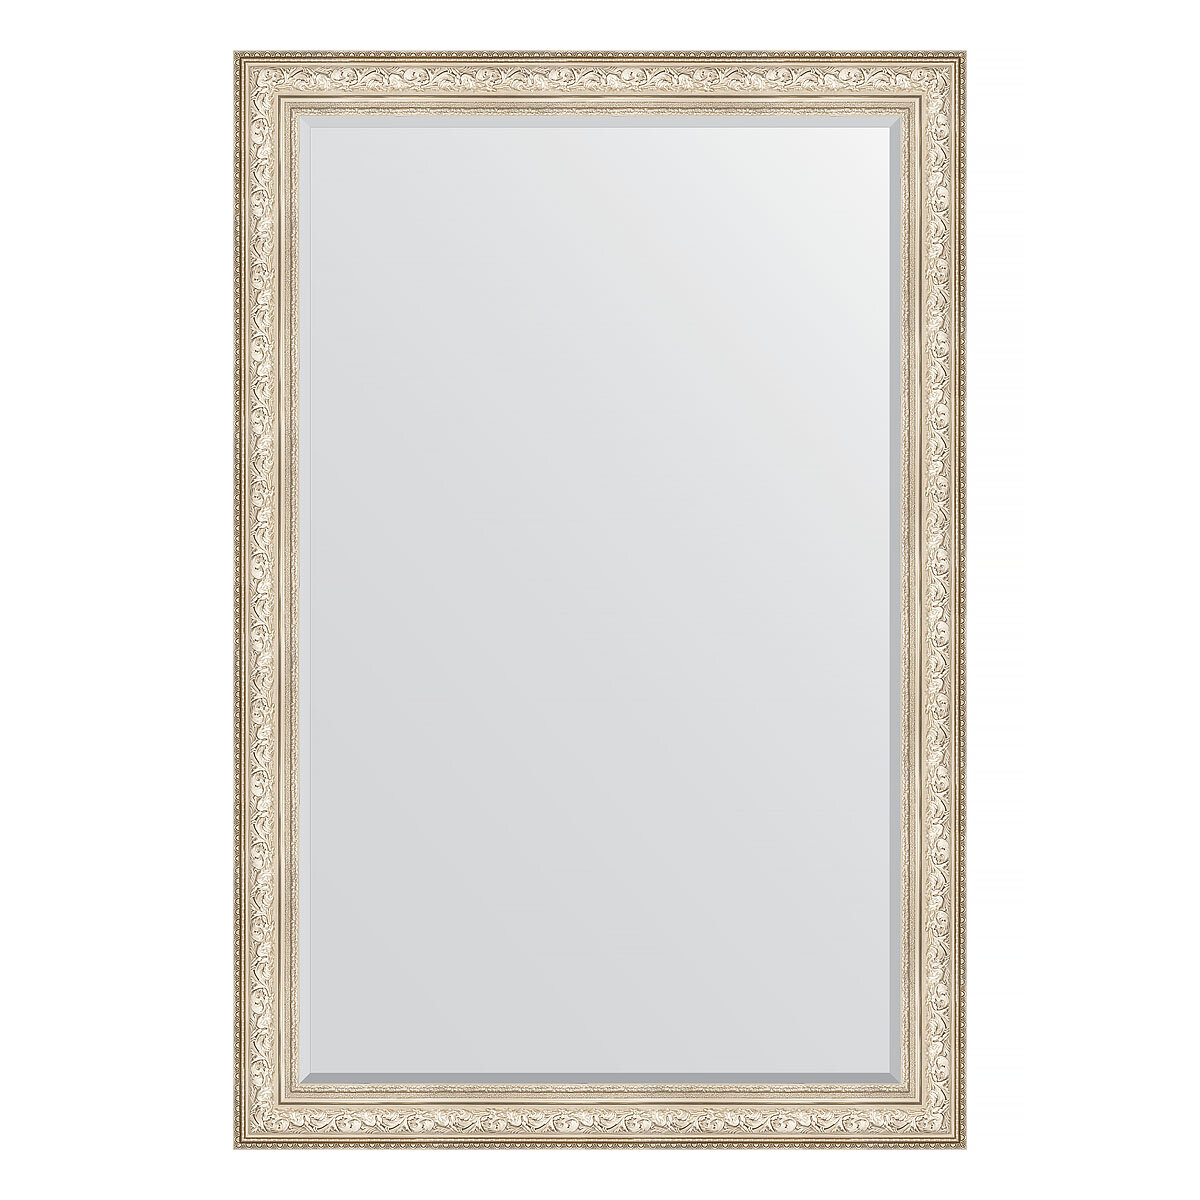 Зеркало настенное с фацетом EVOFORM в багетной раме виньетка серебро, 120х180 см, для гостиной, прихожей, кабинета, спальни и ванной комнаты, BY 3634